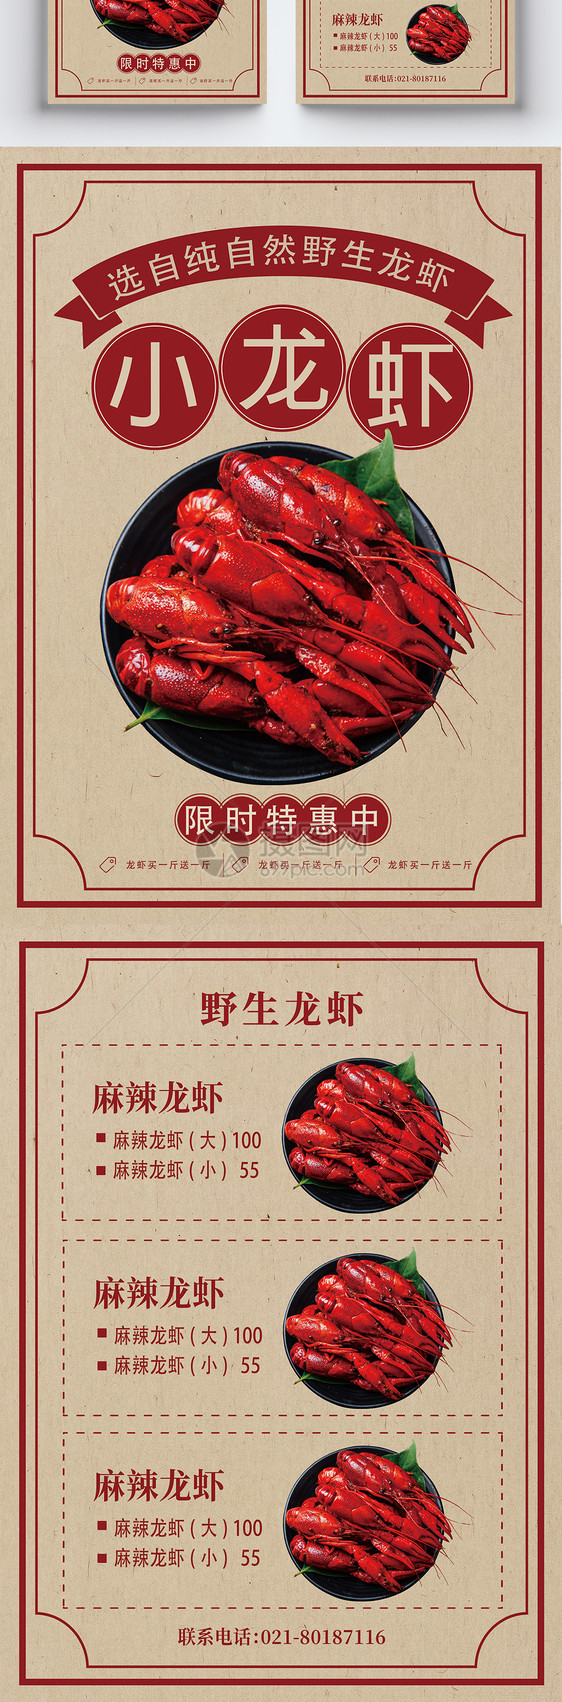 龙虾促销菜单宣传单图片